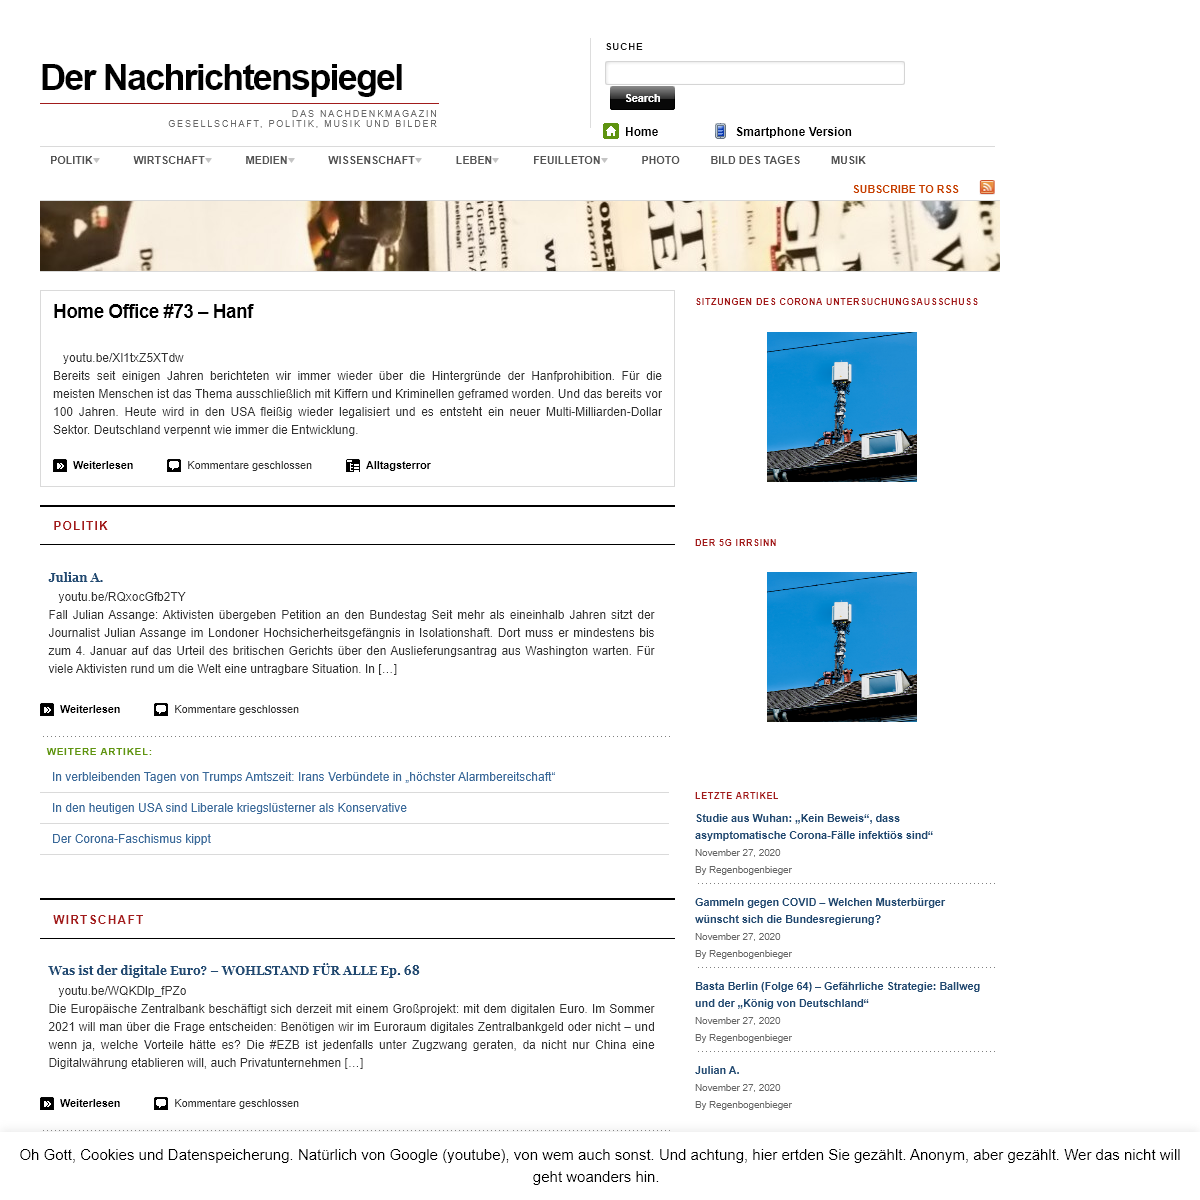 A complete backup of nachrichtenspiegel.de